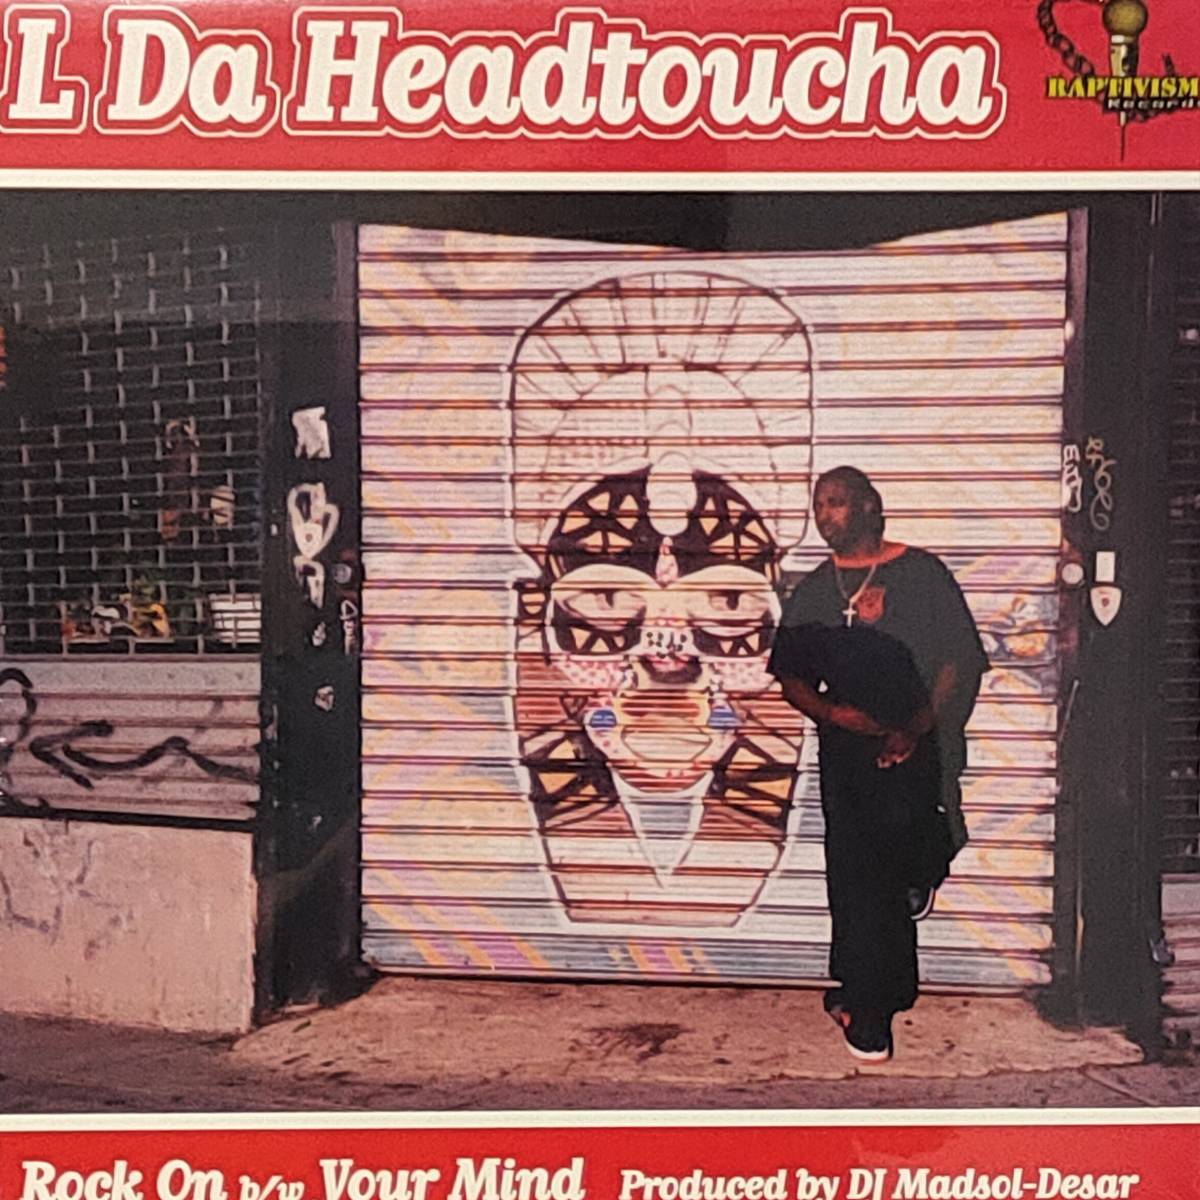 新品未開封 L Da Headtoucha “Rock On / Your Mind” 12inch 送料無料 (1159)